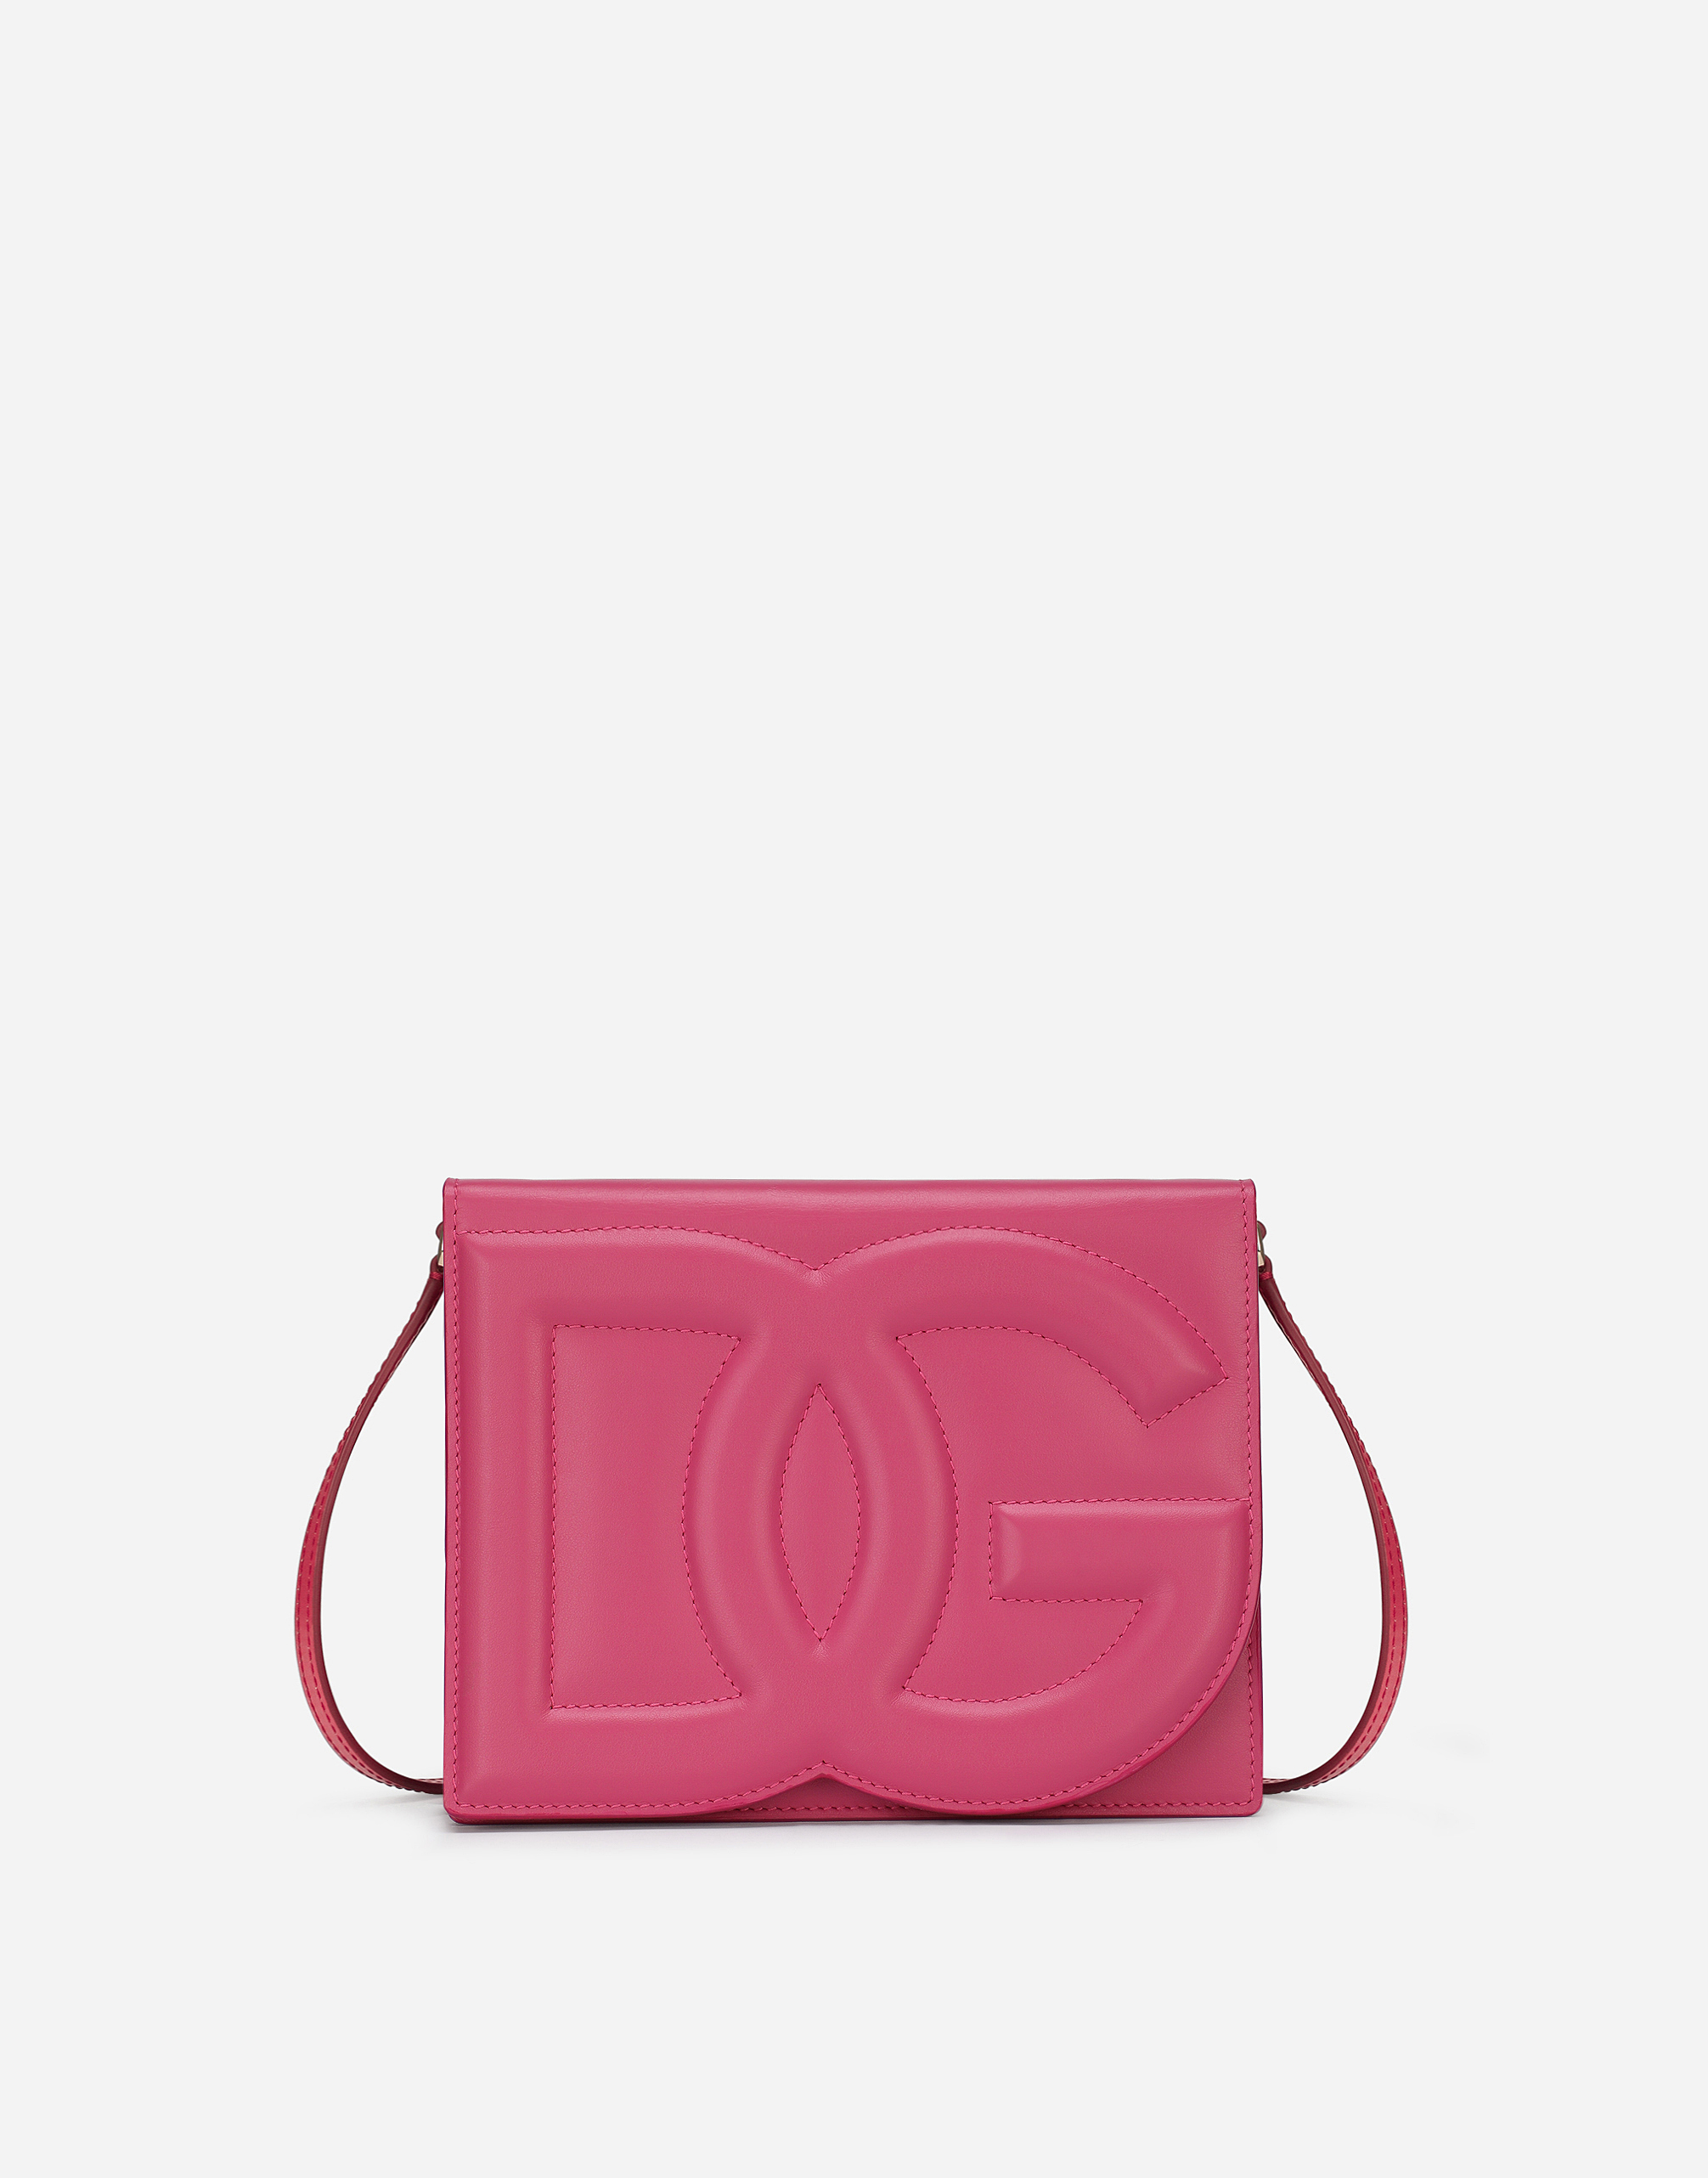 Dolce & Gabbana Calfskin Logo Crossbody Bag In Lilac